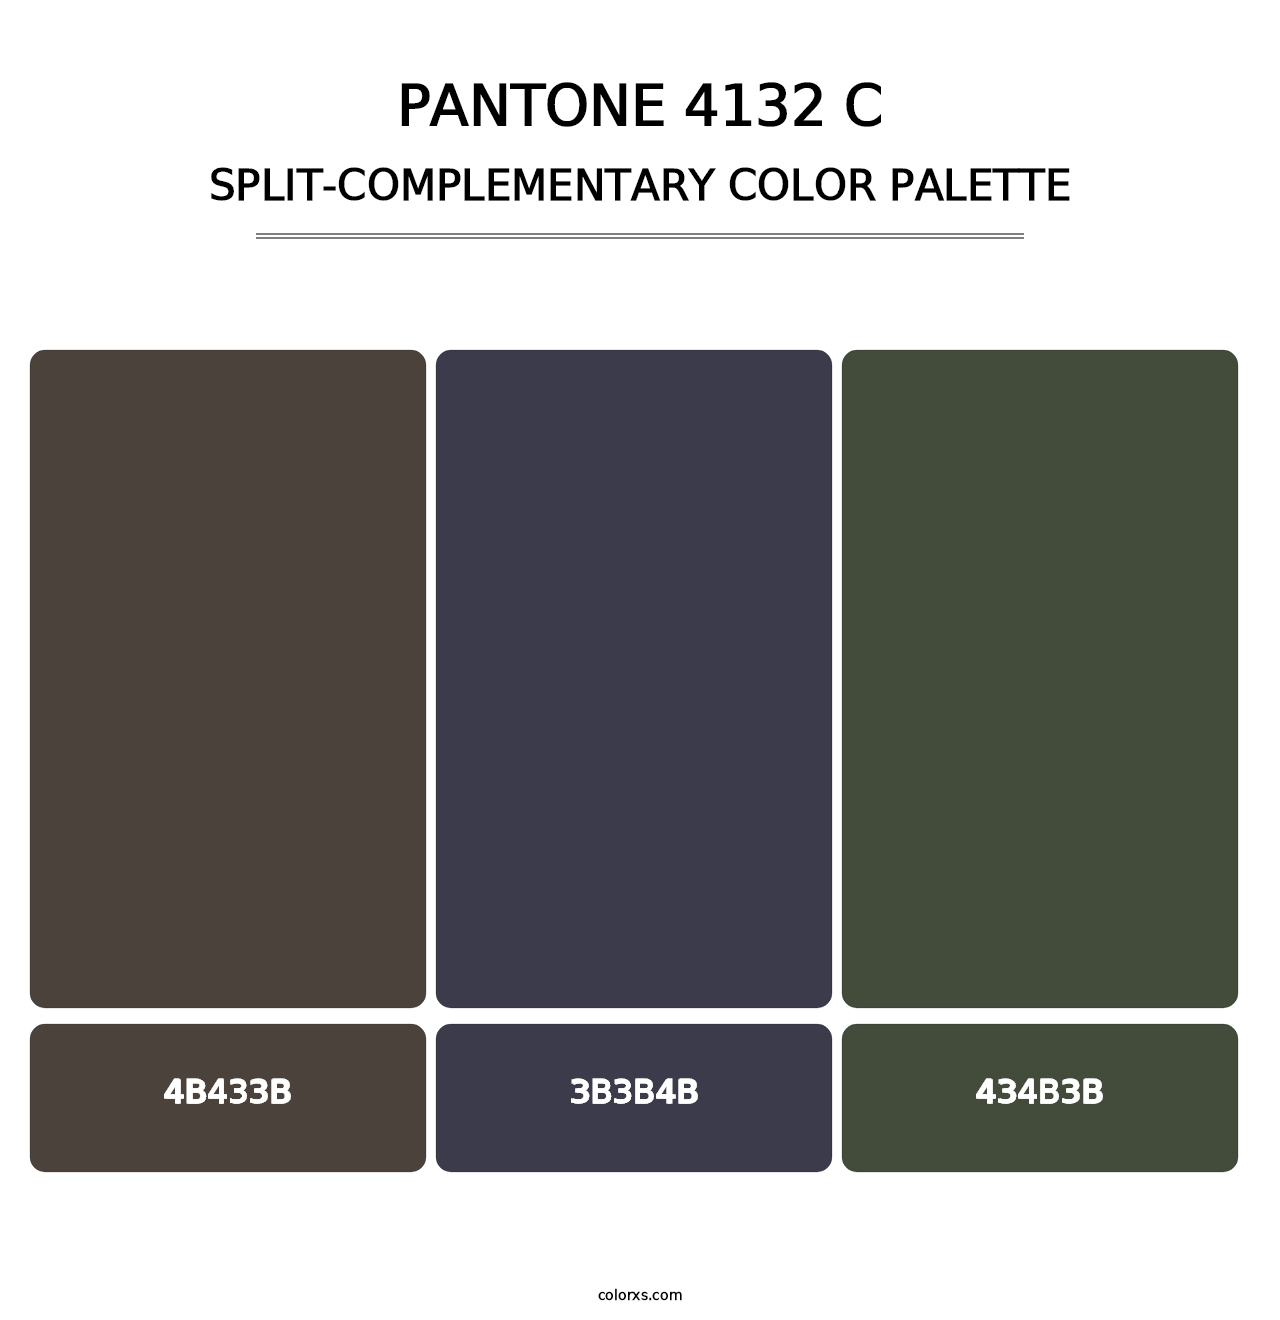 PANTONE 4132 C - Split-Complementary Color Palette